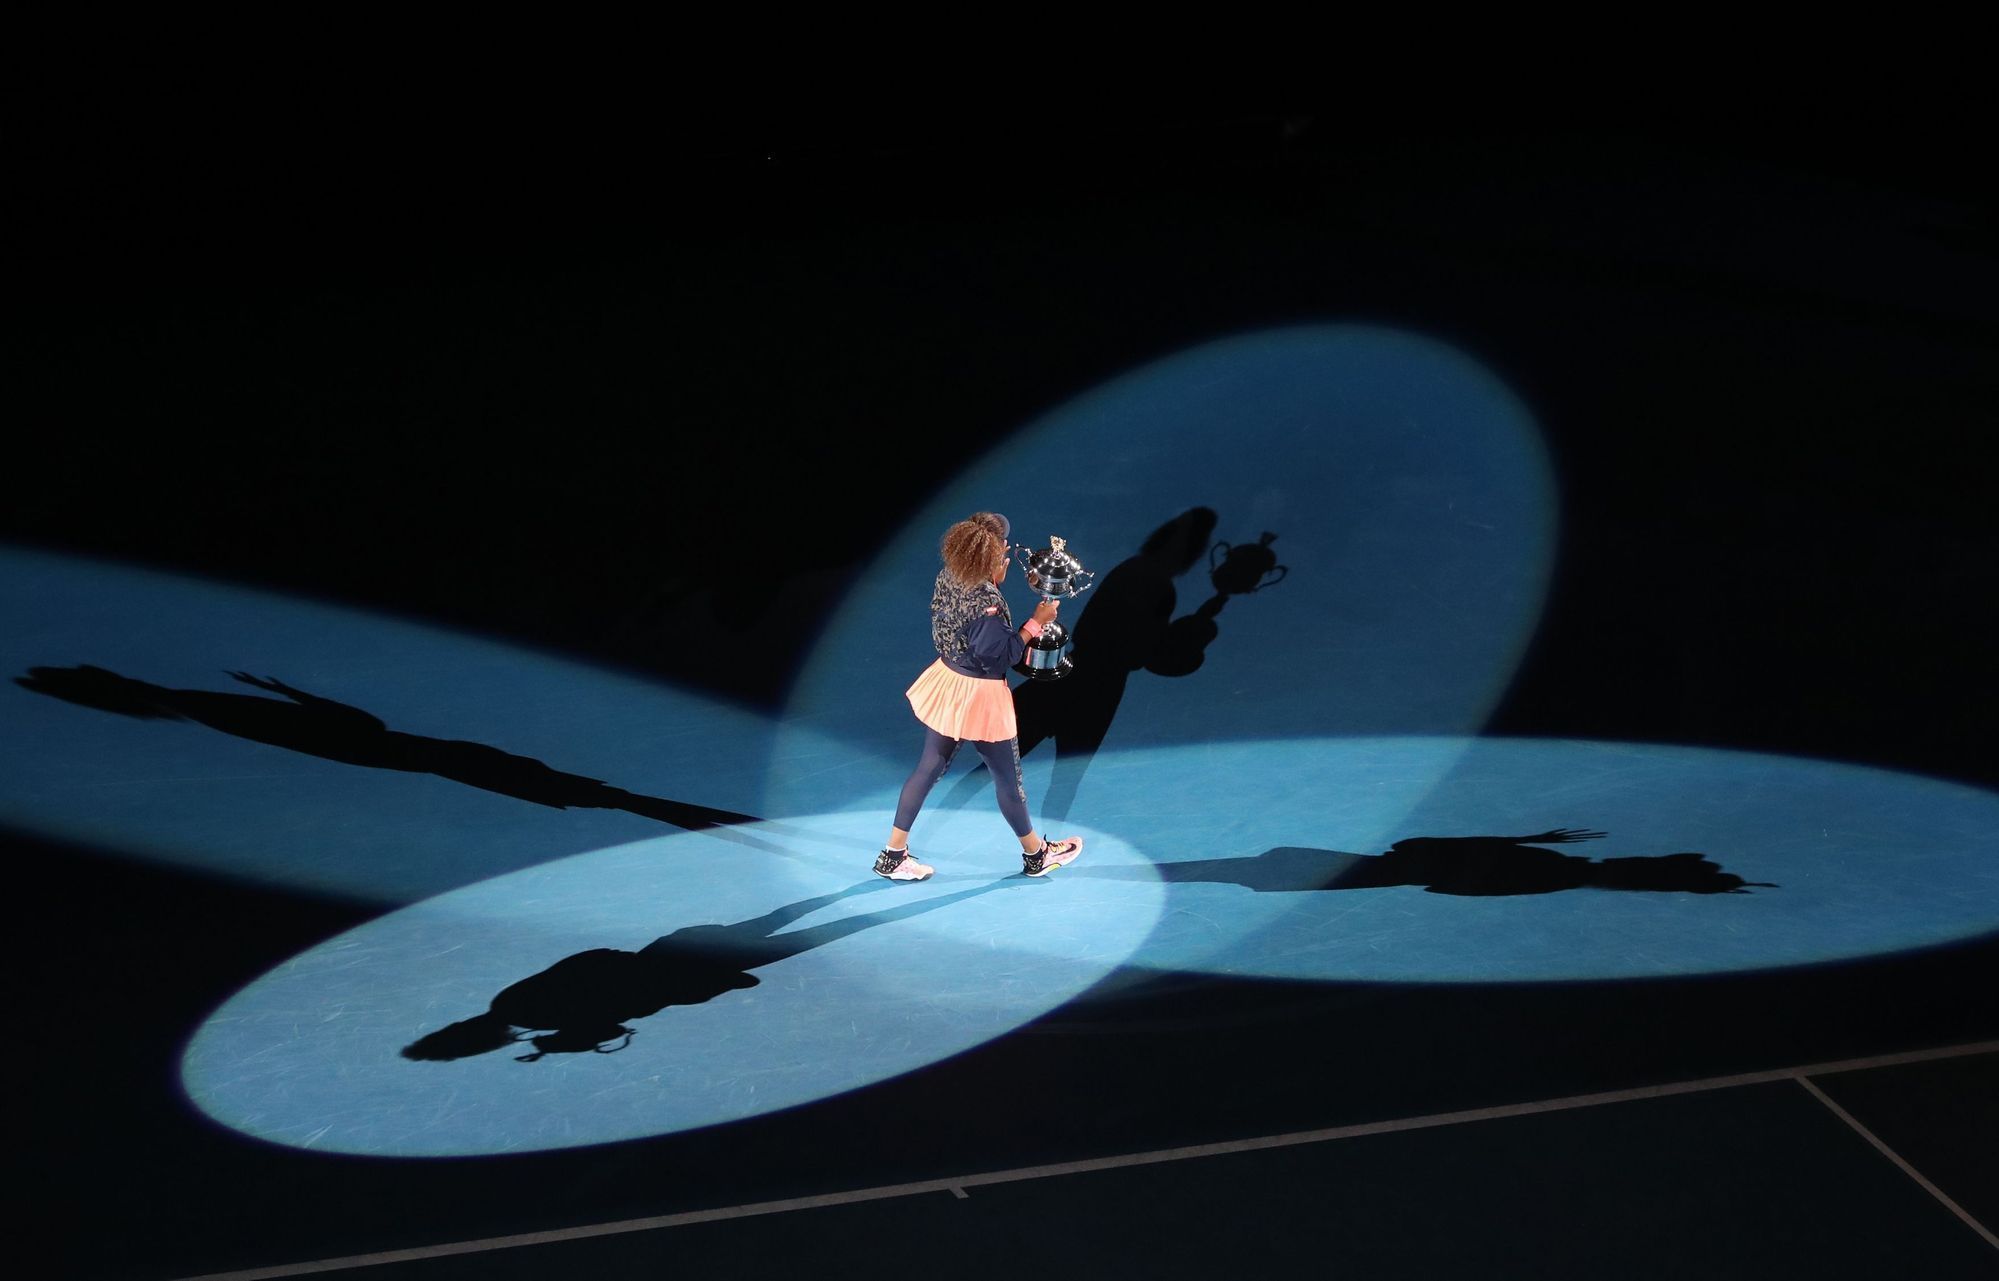 Naomi Ósakaová pózuje s trofejí pro vítězku ženské dvouhry na Australian Open 2021